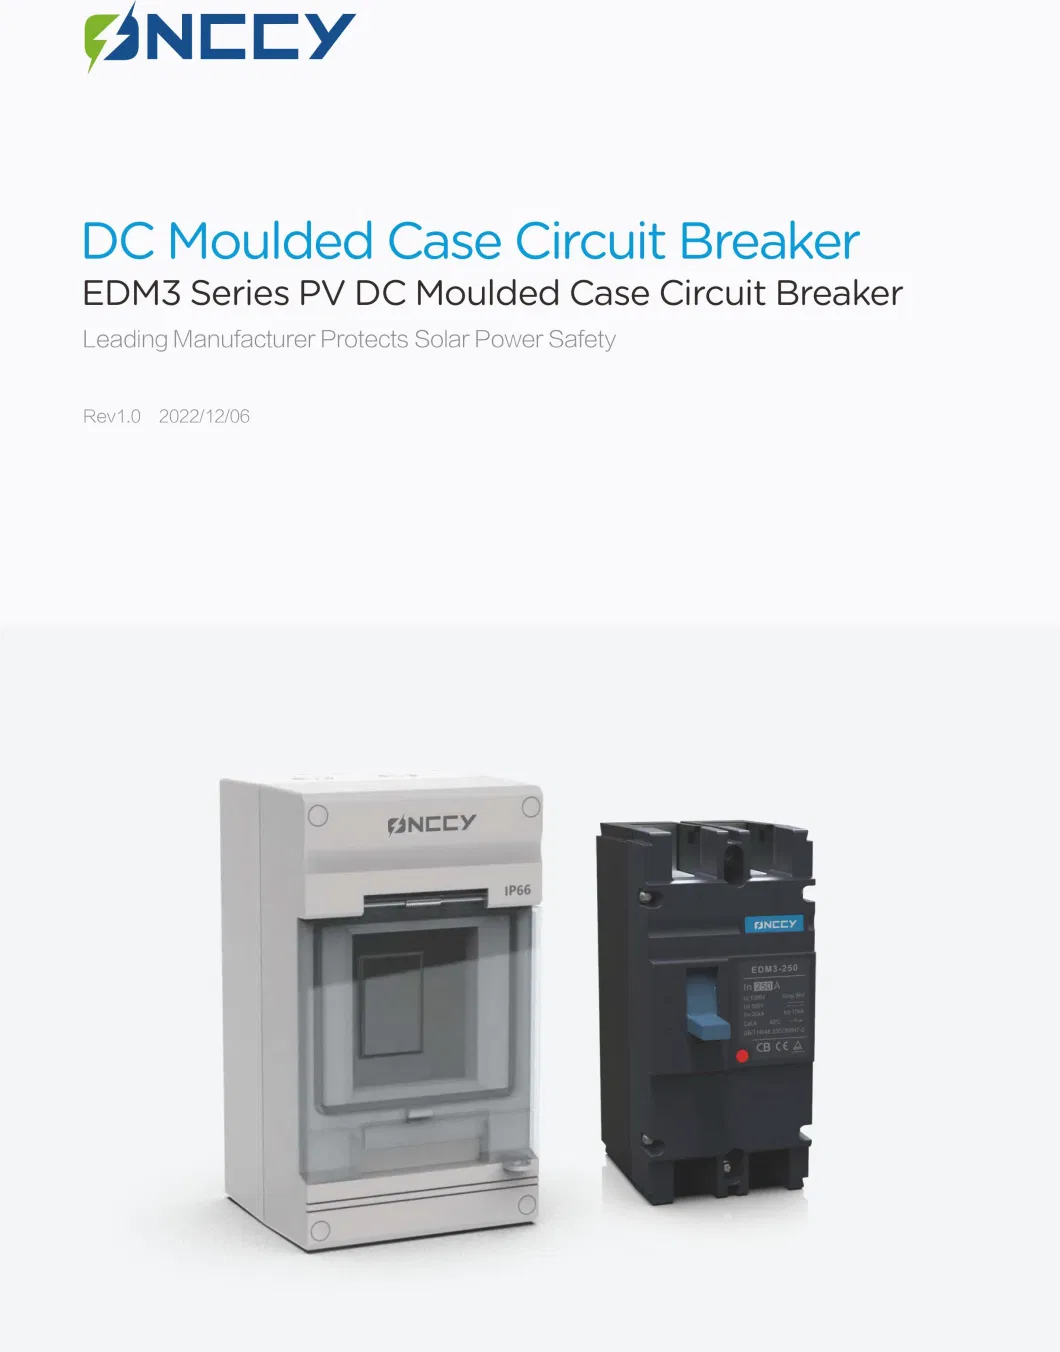 EDM3 DC Molded Case Circuit Breaker 500V 250A 2p MCCB